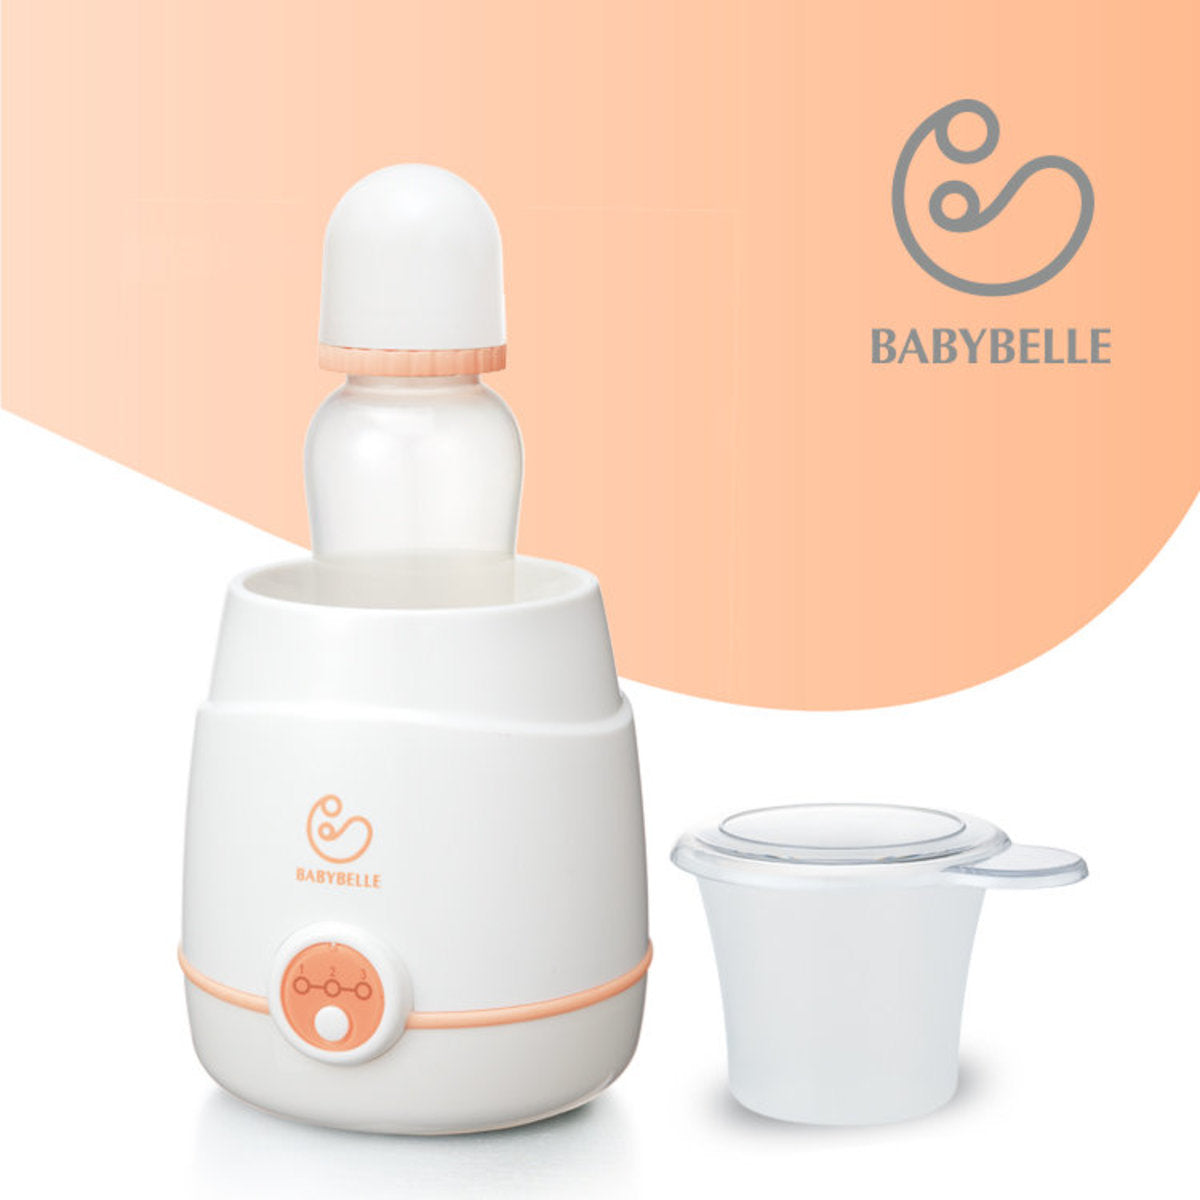 [超級優惠套裝] Babybelle 2合1電子奶瓶消毒鍋連電子暖奶器套裝